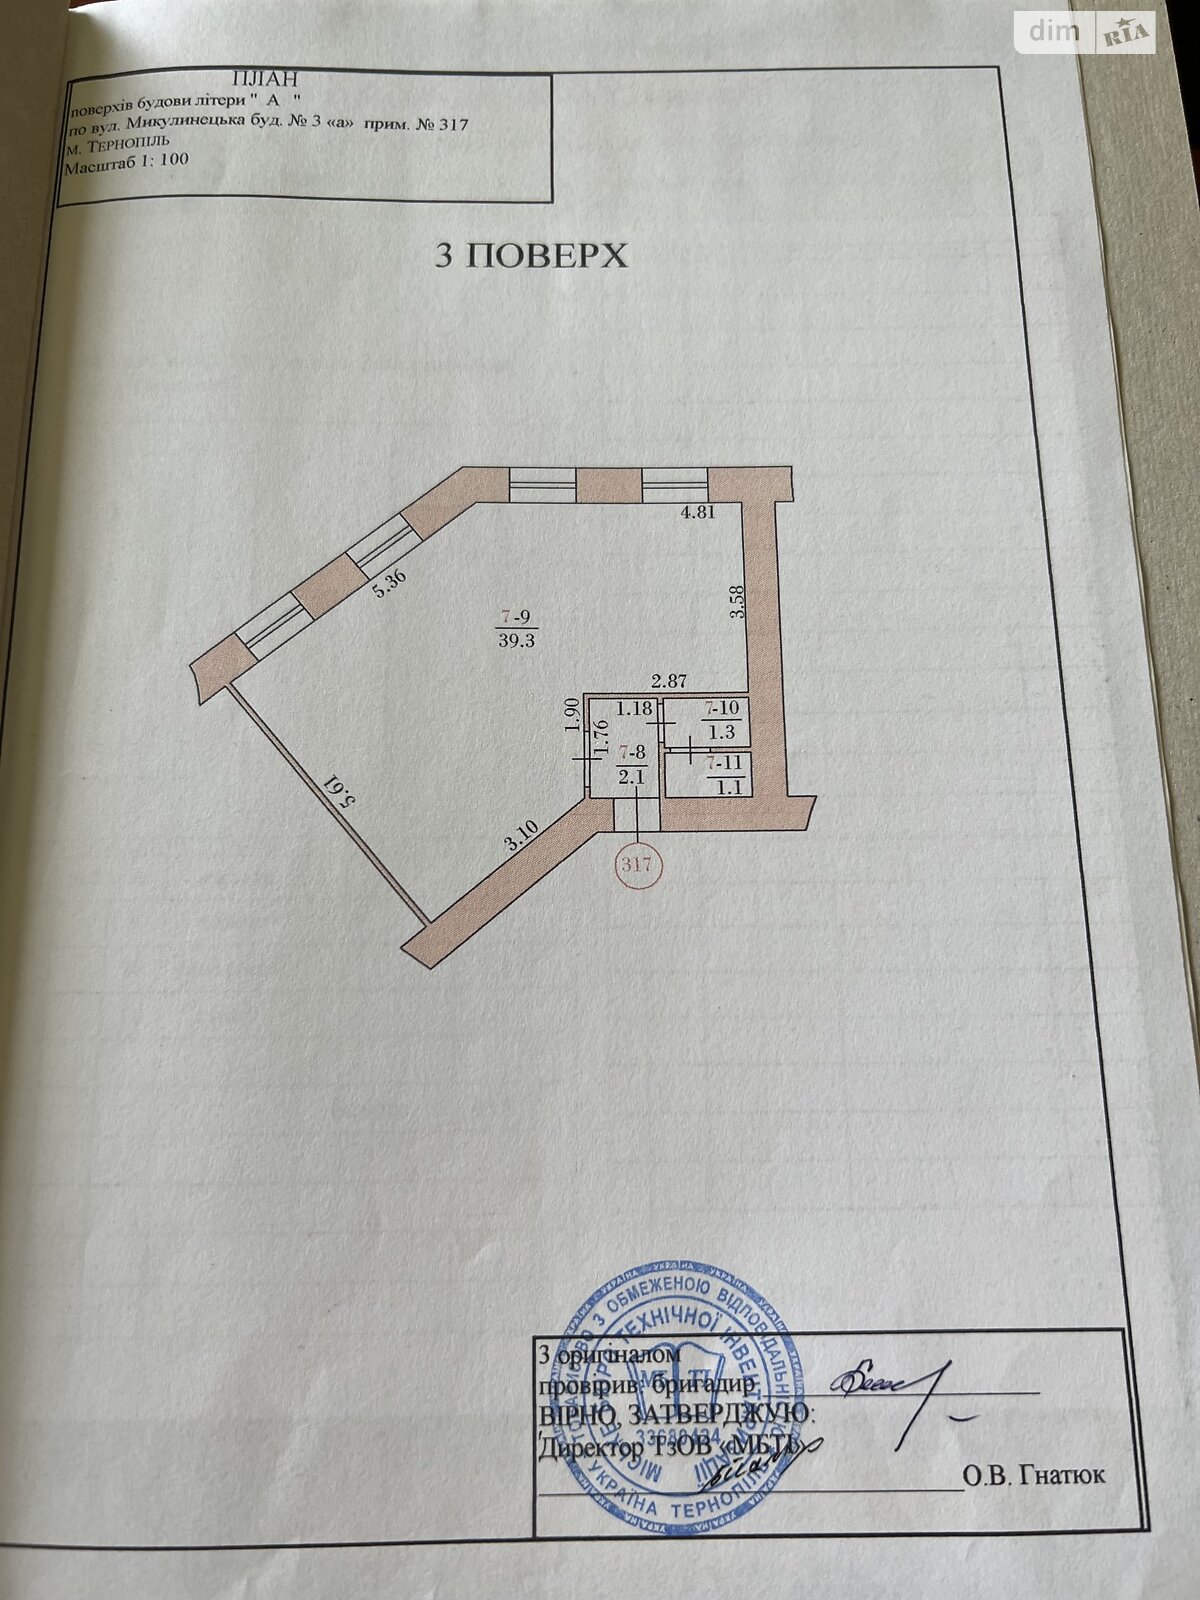 Оренда офісного приміщення в Тернополі, Торговиця (Живова Анатолія) вулиця, приміщень - 1, поверх - 3 фото 1